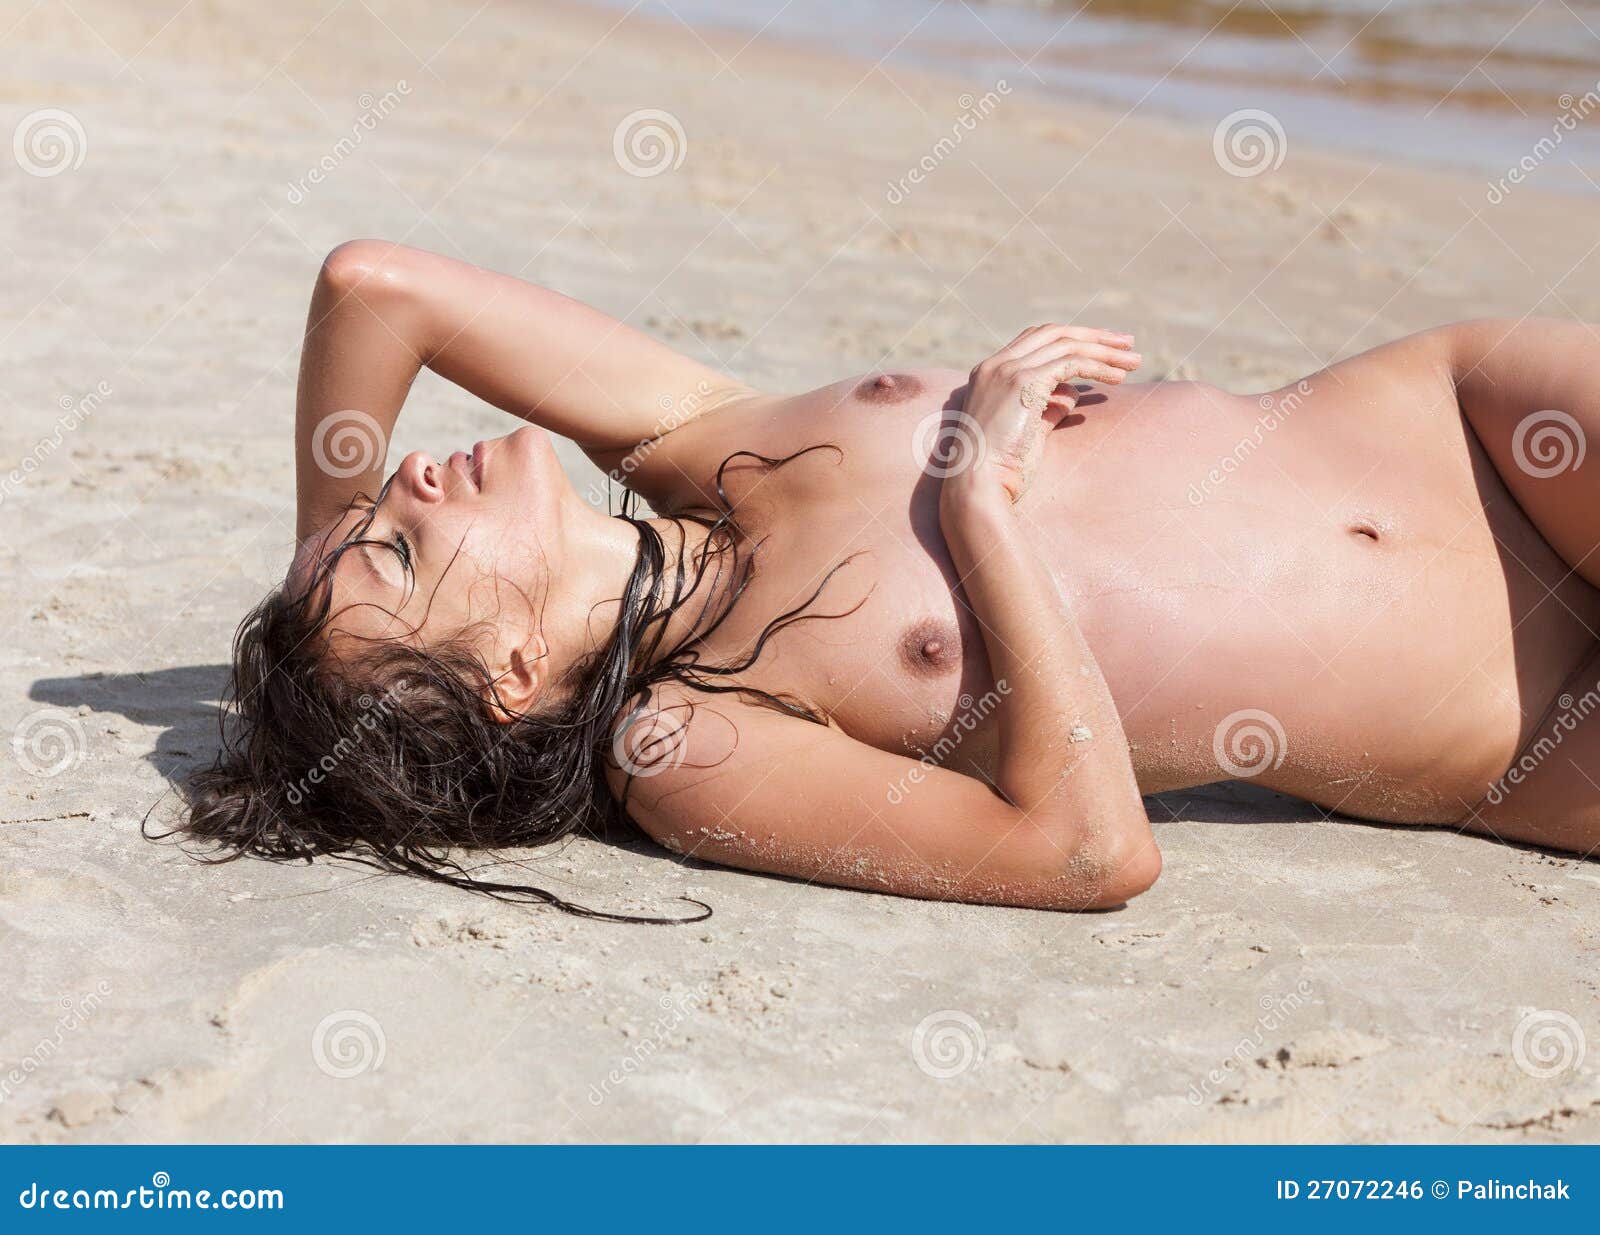 ходите ли вы на пляж голыми фото 75